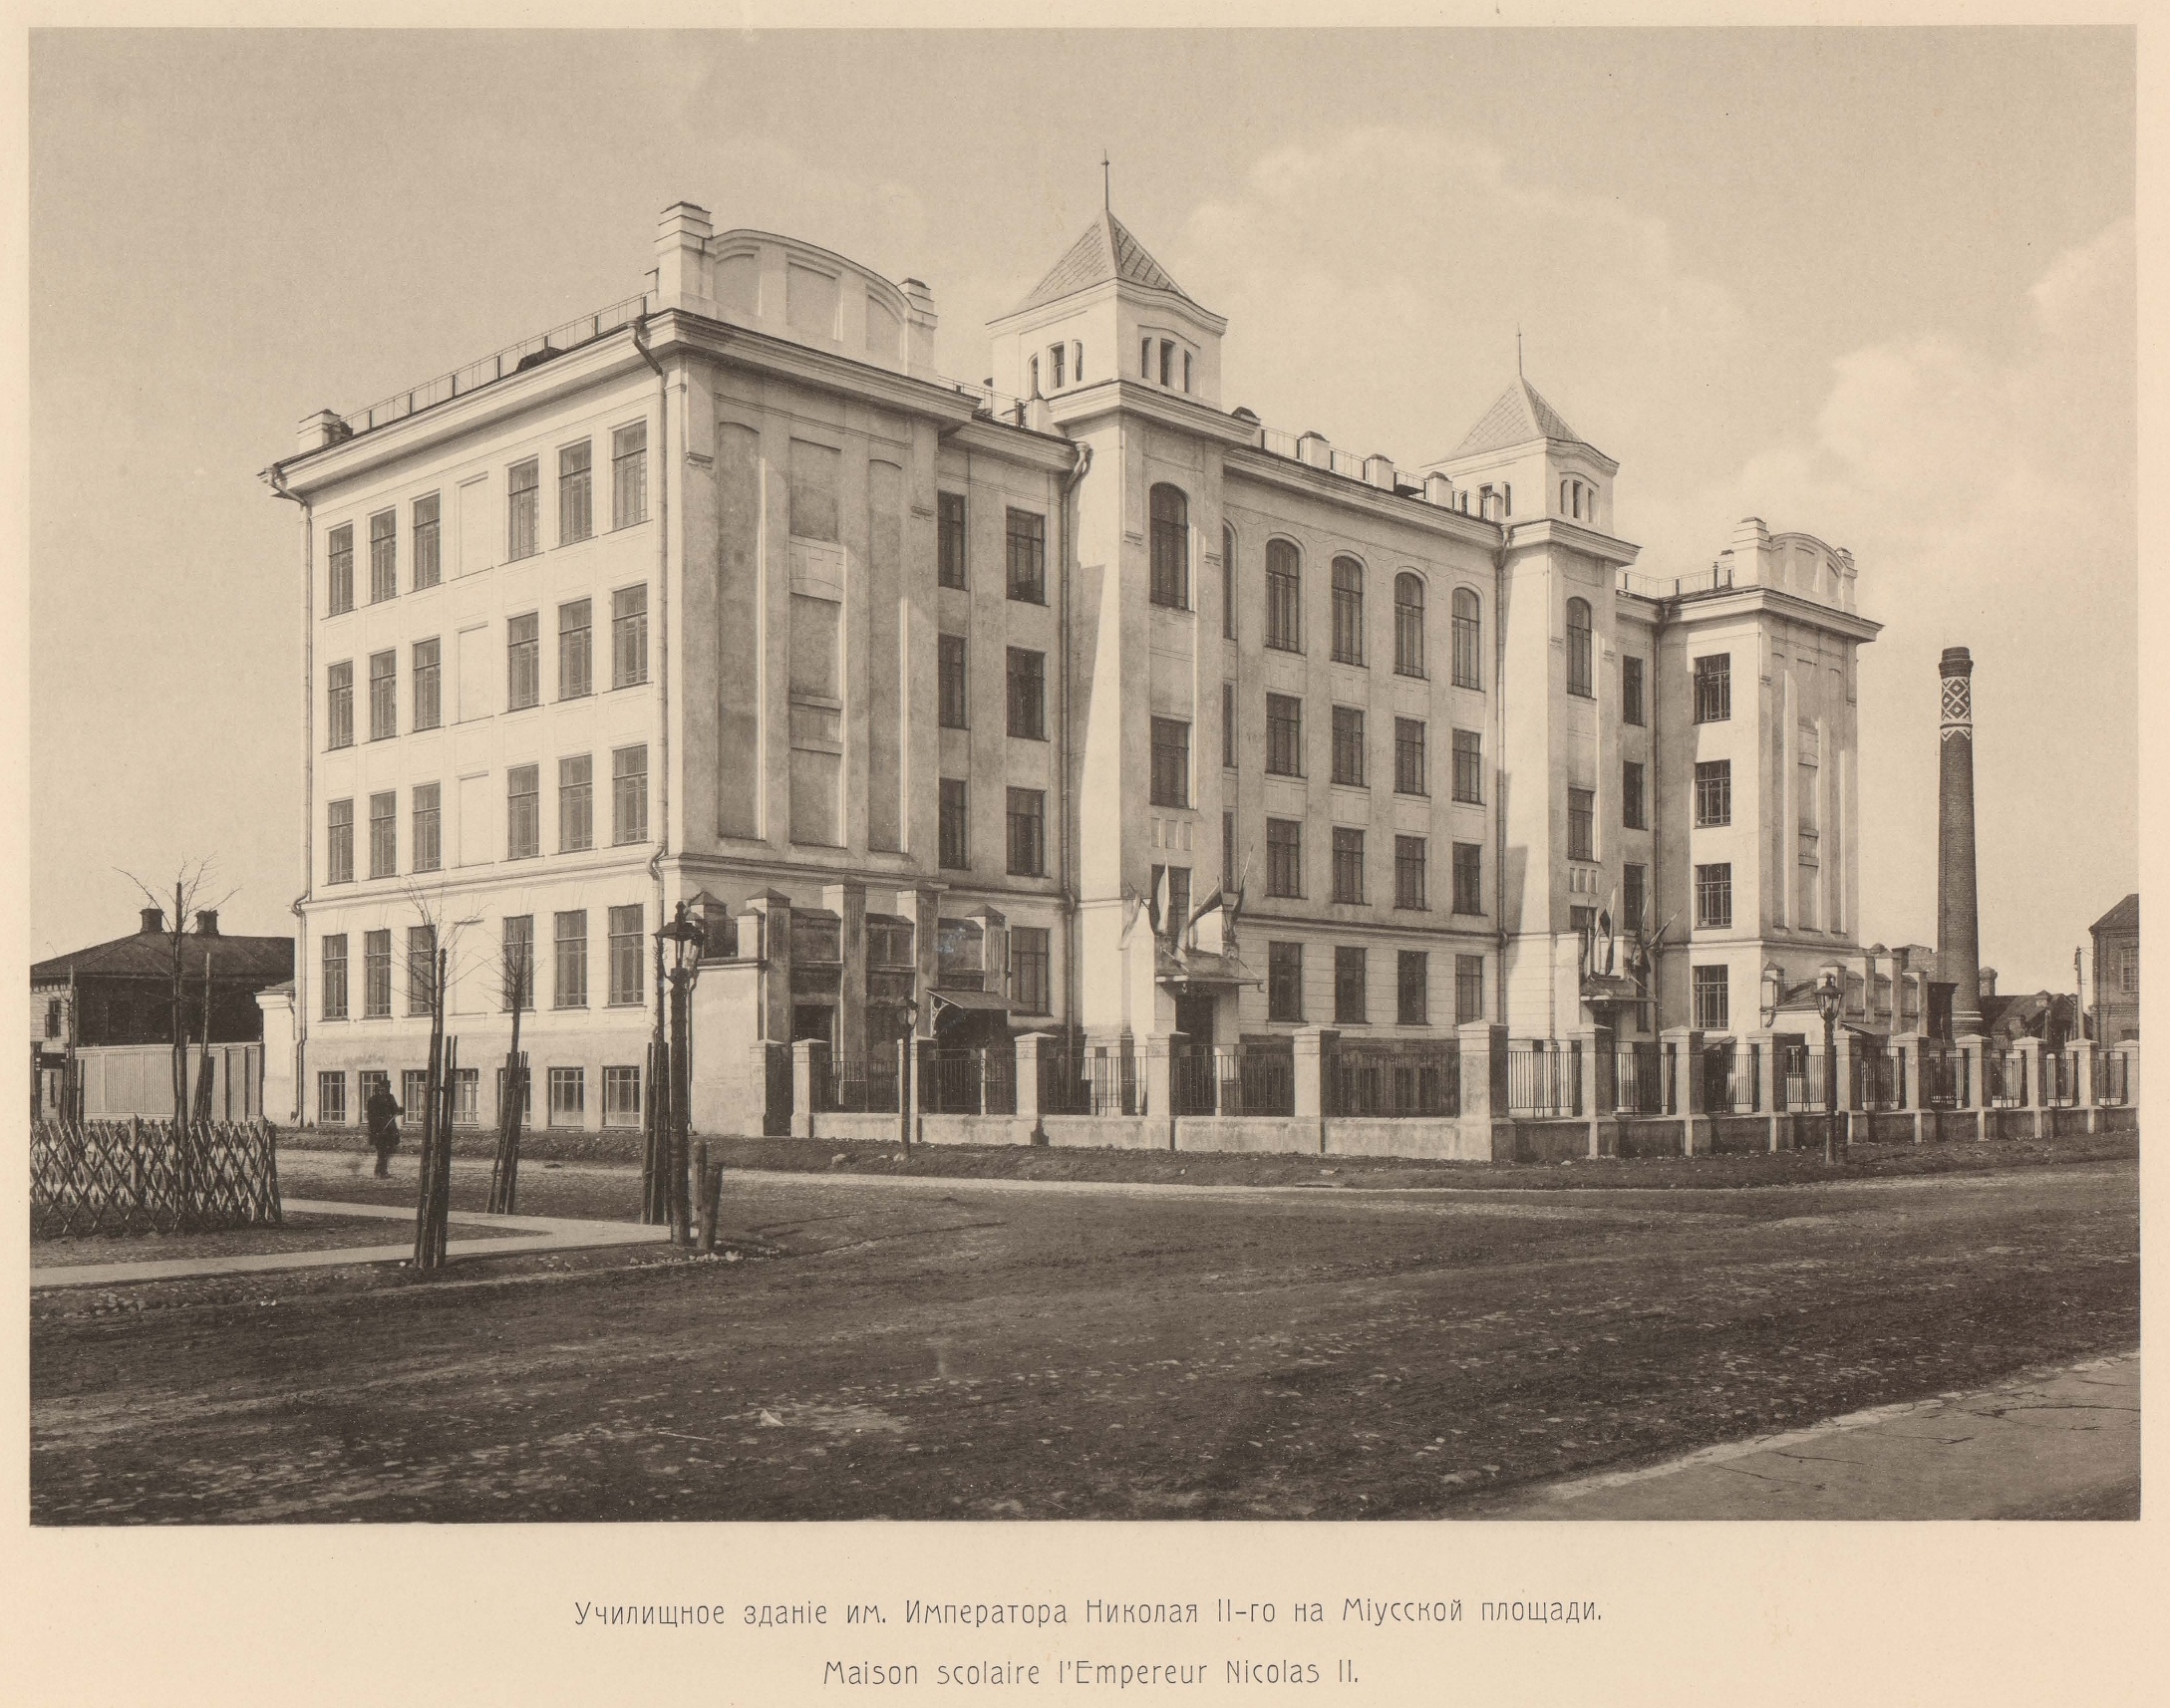 Училищное здание им. Императора Николая II-го на Миусской площади